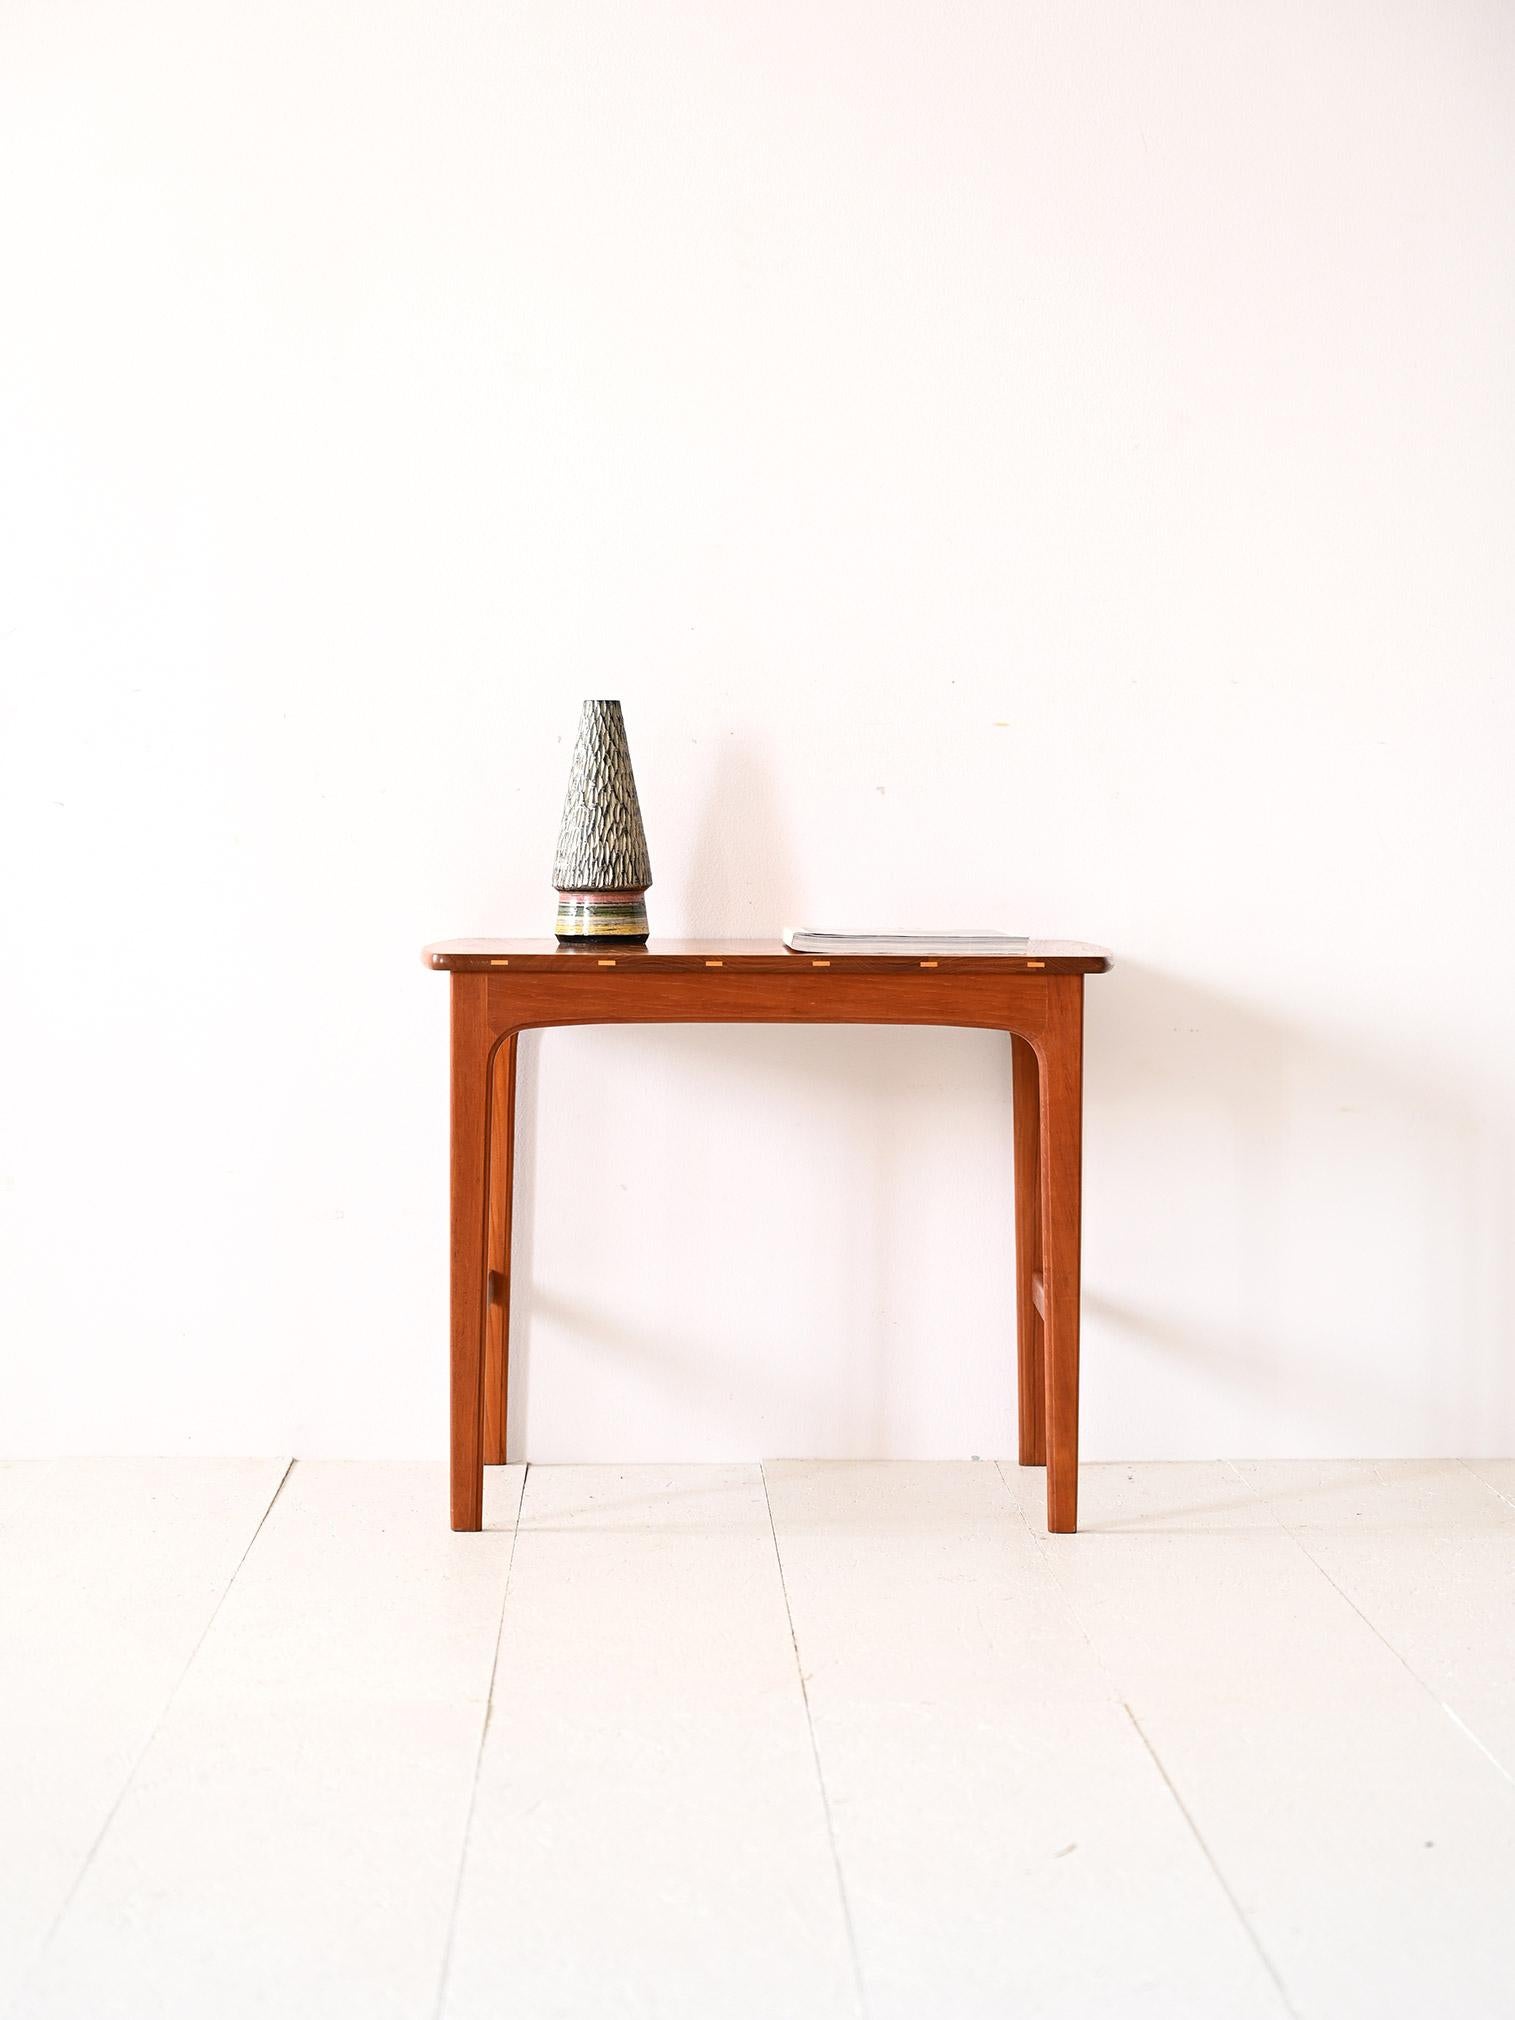 Table en teck des années 1960.

Un meuble élégant à la beauté intemporelle. Les lignes essentielles et les détails soignés en font une table basse adaptée pour embellir n'importe quelle pièce avec simplicité.
Sa particularité réside dans la présence